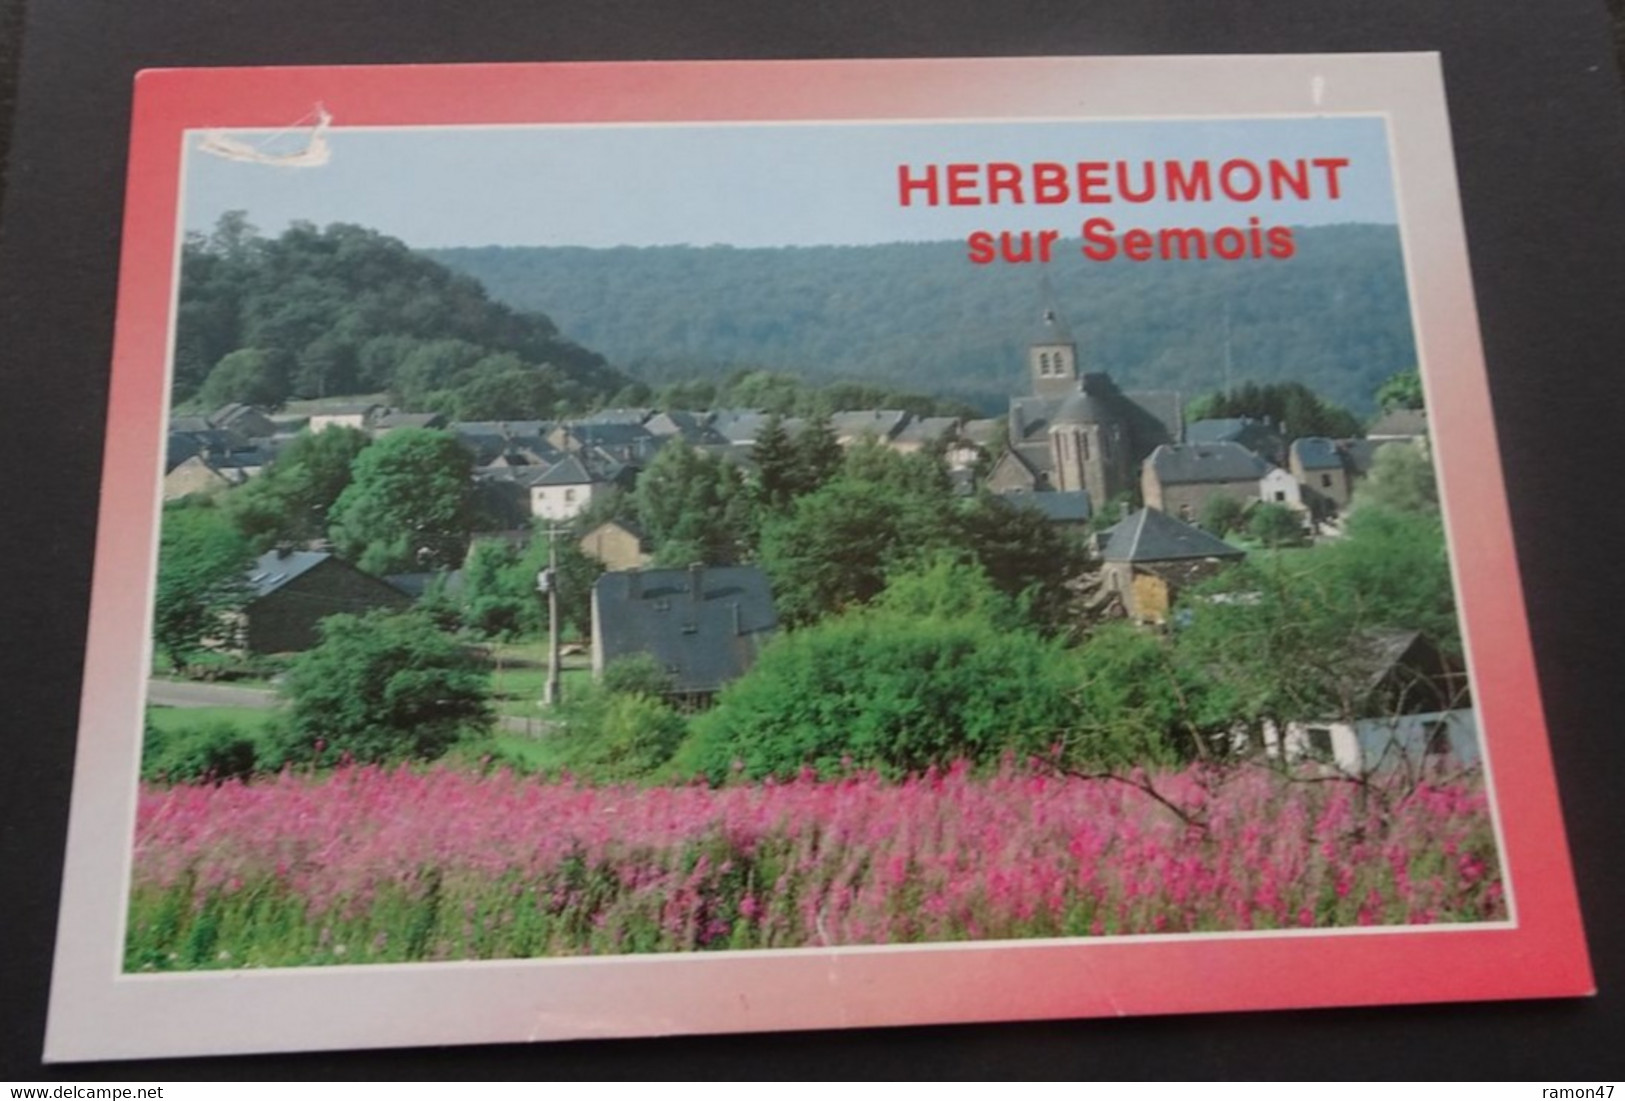 Herbeumont Sur Semois - Edit. Thill, Bruxelles - # 26 - Herbeumont